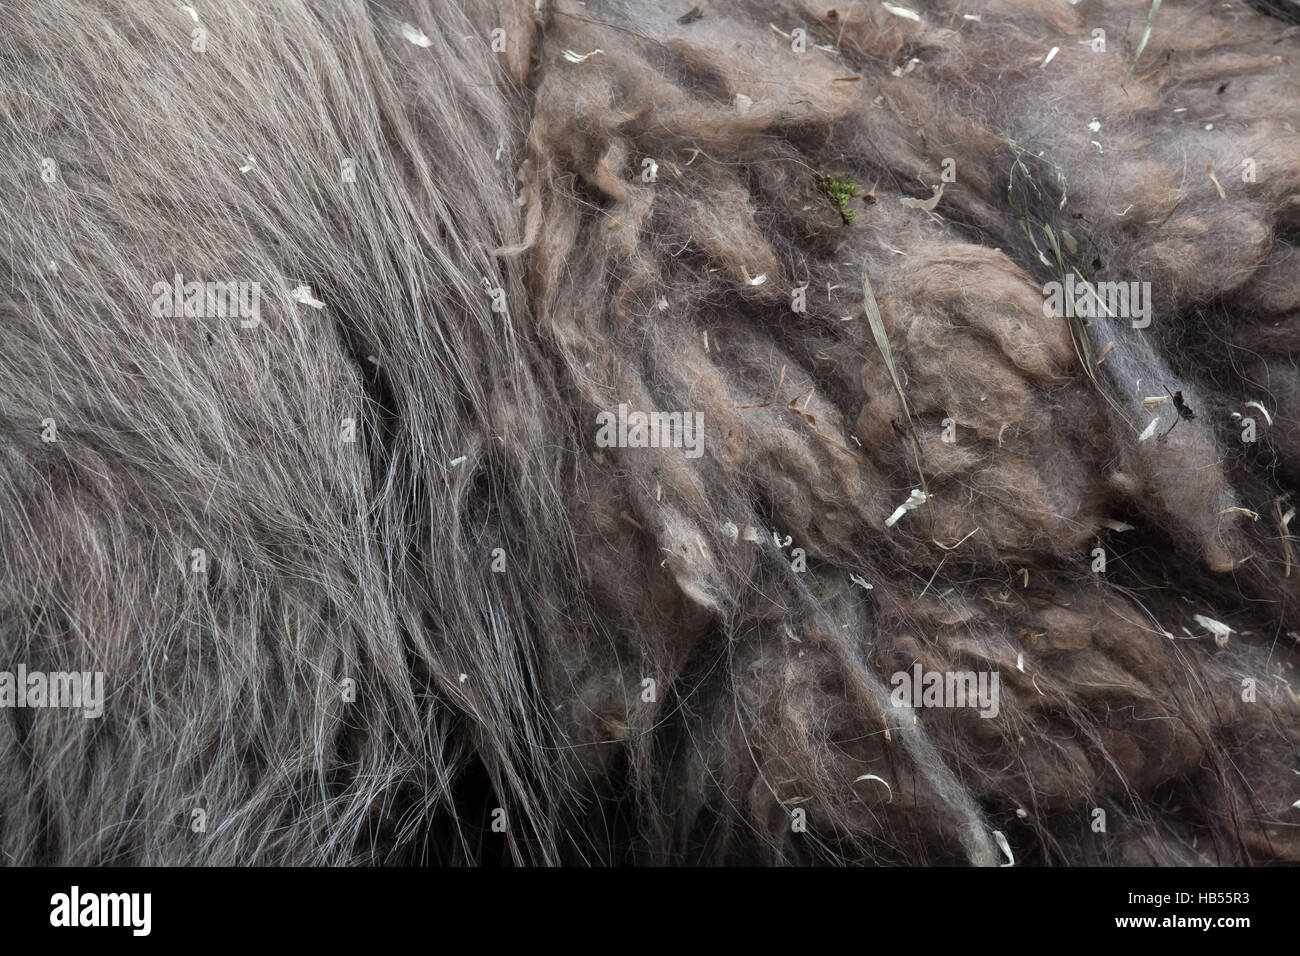 Llama (Lama glama). Fur texture. Stock Photo